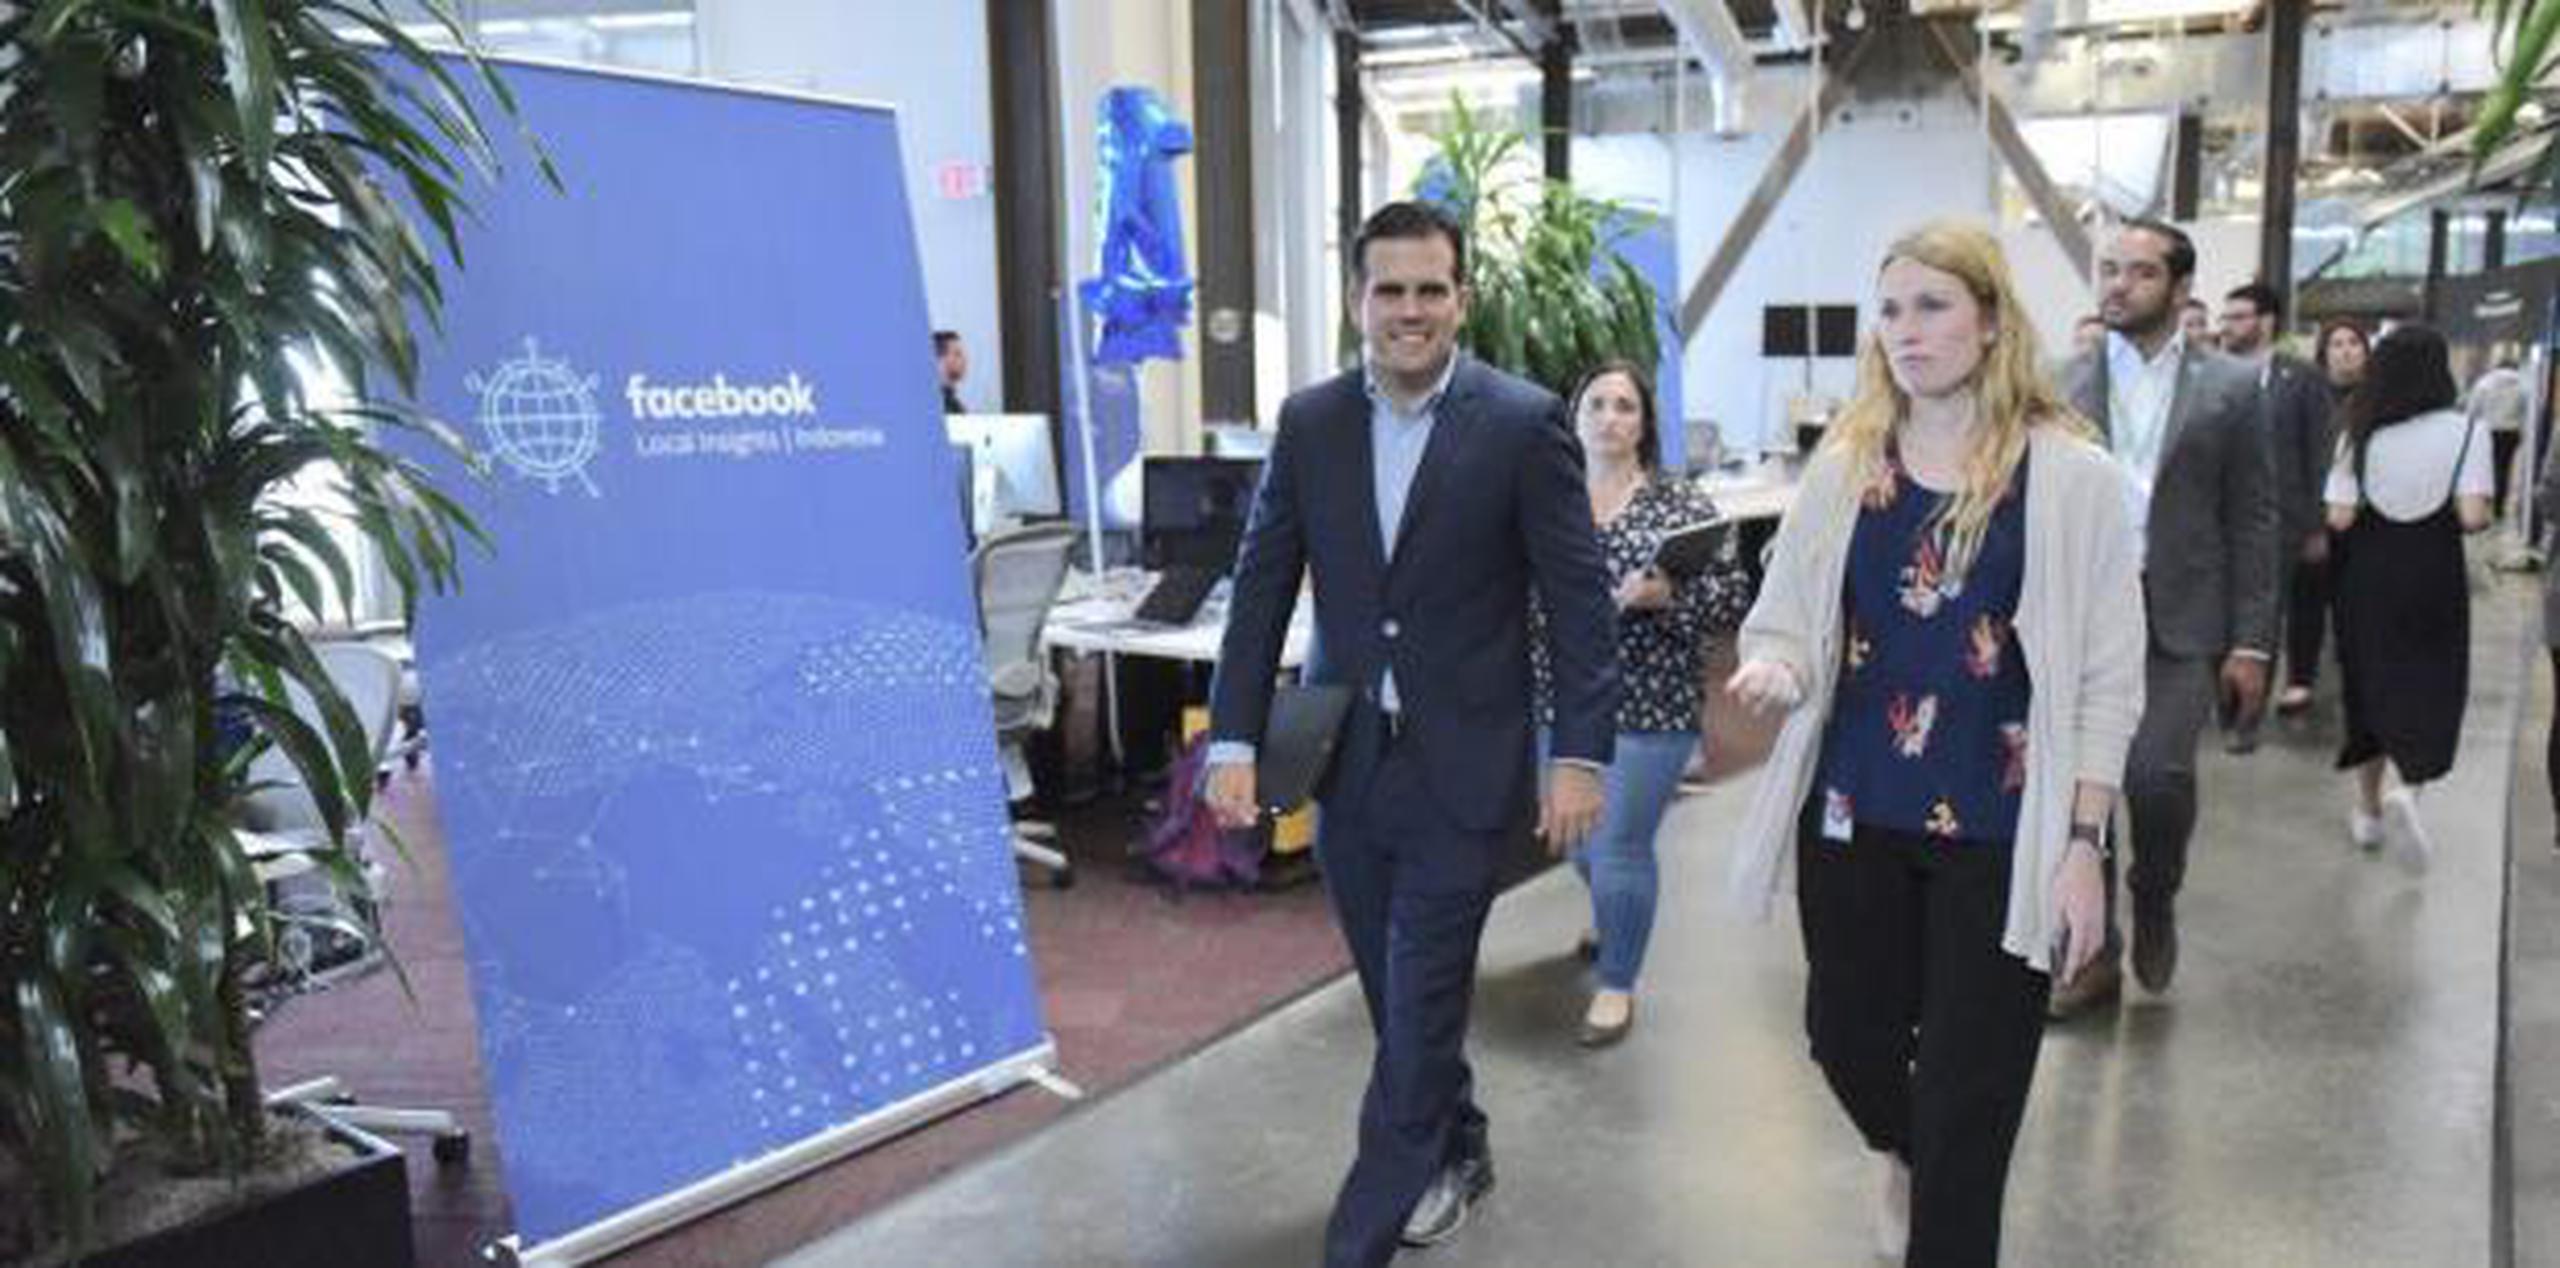 El gobernador destacó que Facebook sirvió como herramienta de comunicación con familiares en el extranjero mientras Puerto Rico tuvo problemas de conectividad tras el embate del huracán María. (Suministrada)